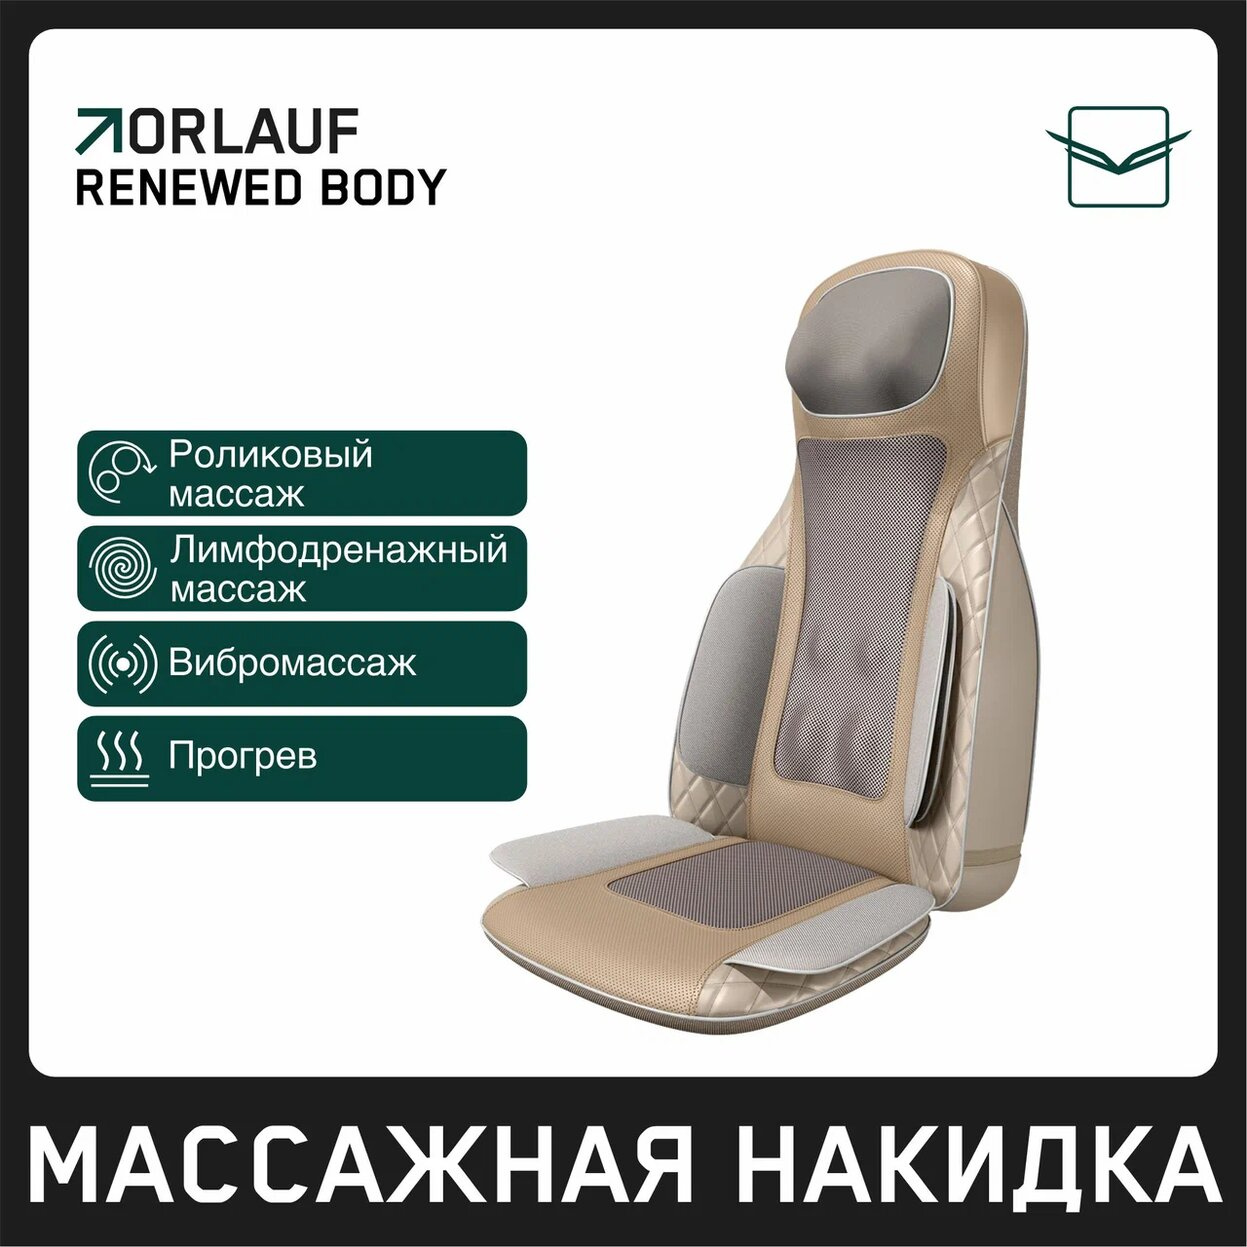 Renewed Body в Москве по цене 39900 ₽ в категории массажные накидки Orlauf